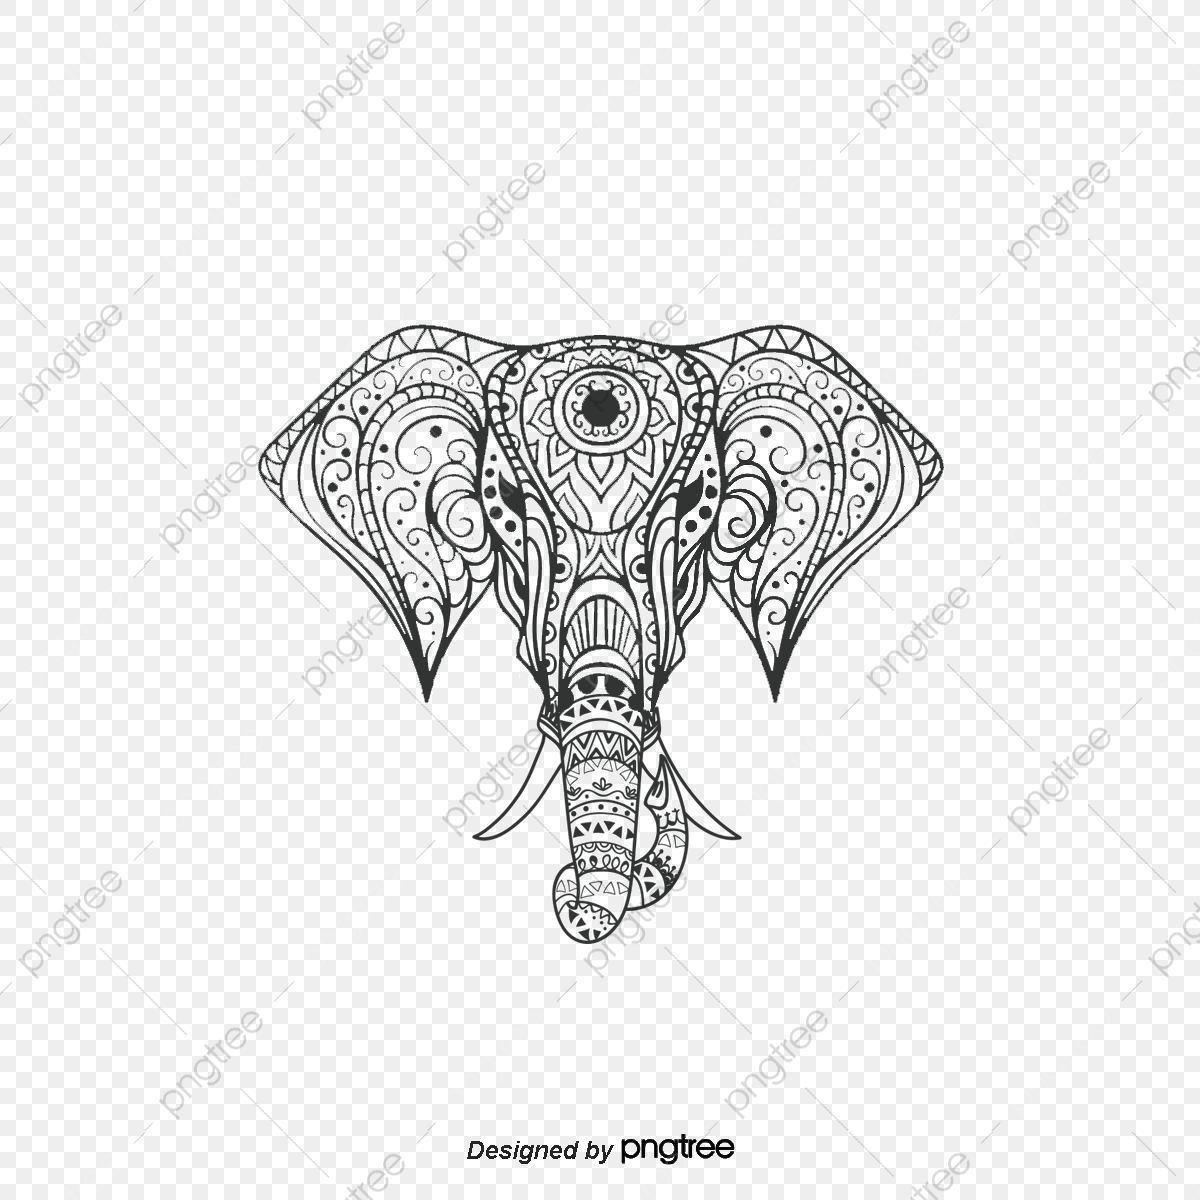 elephants clipart god